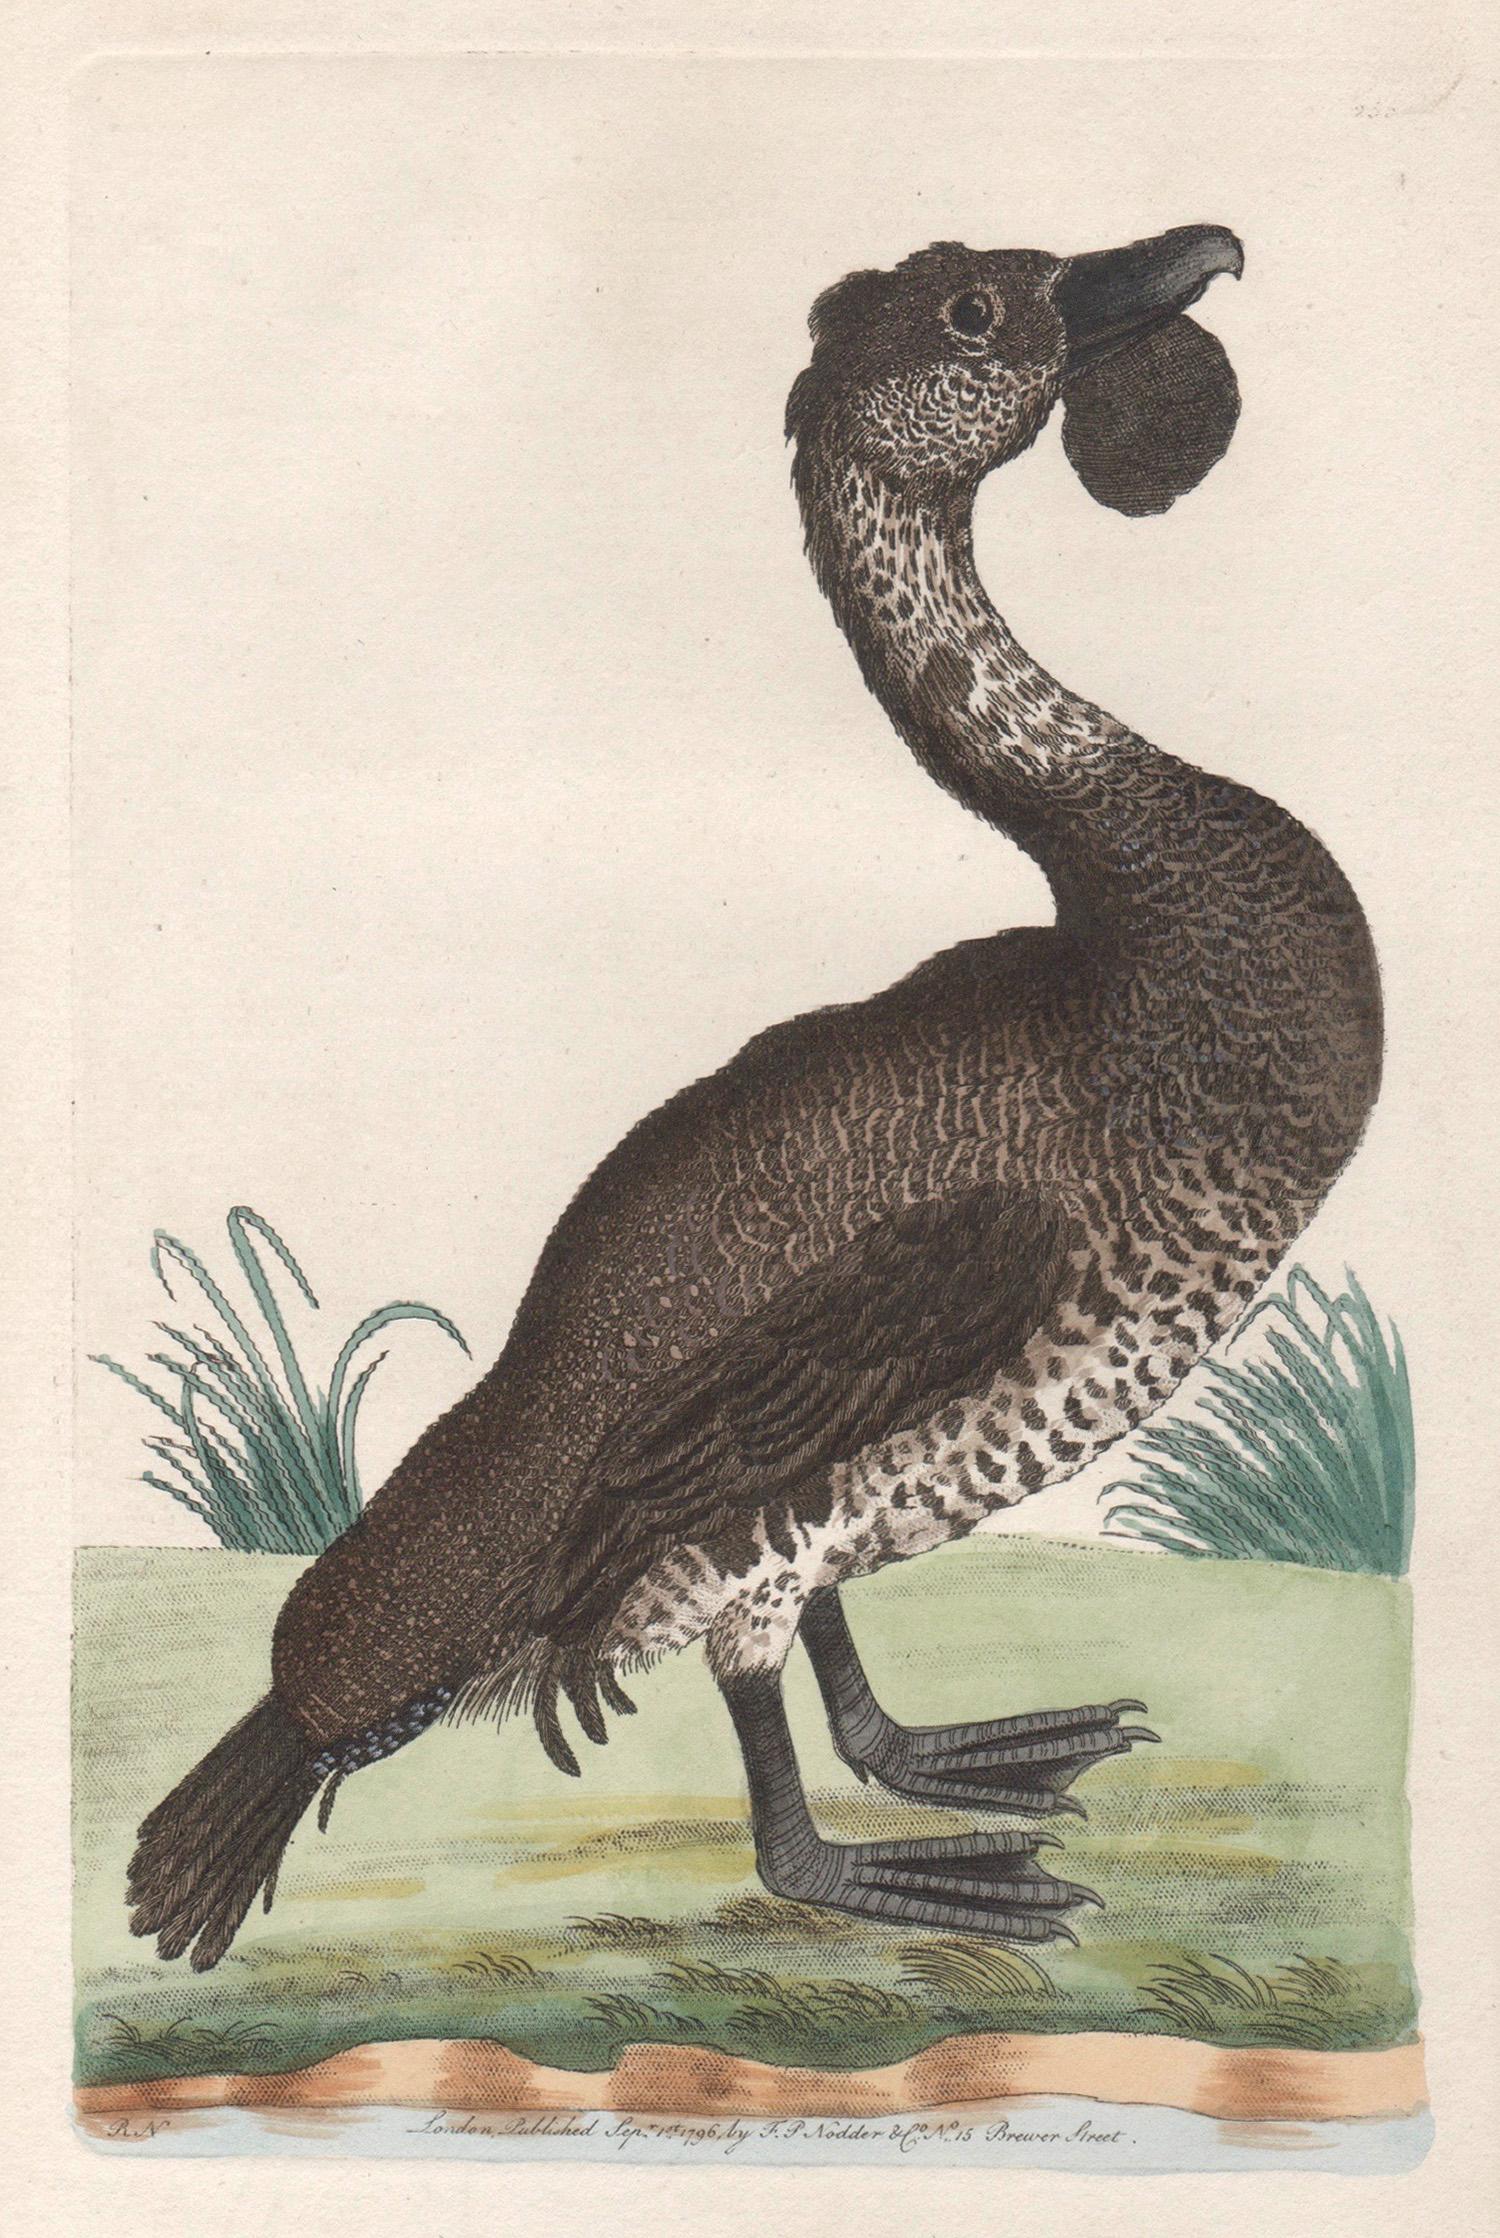 The Lobated Musk Duck, Australie, gravure avec coloration à la main originale, 1795